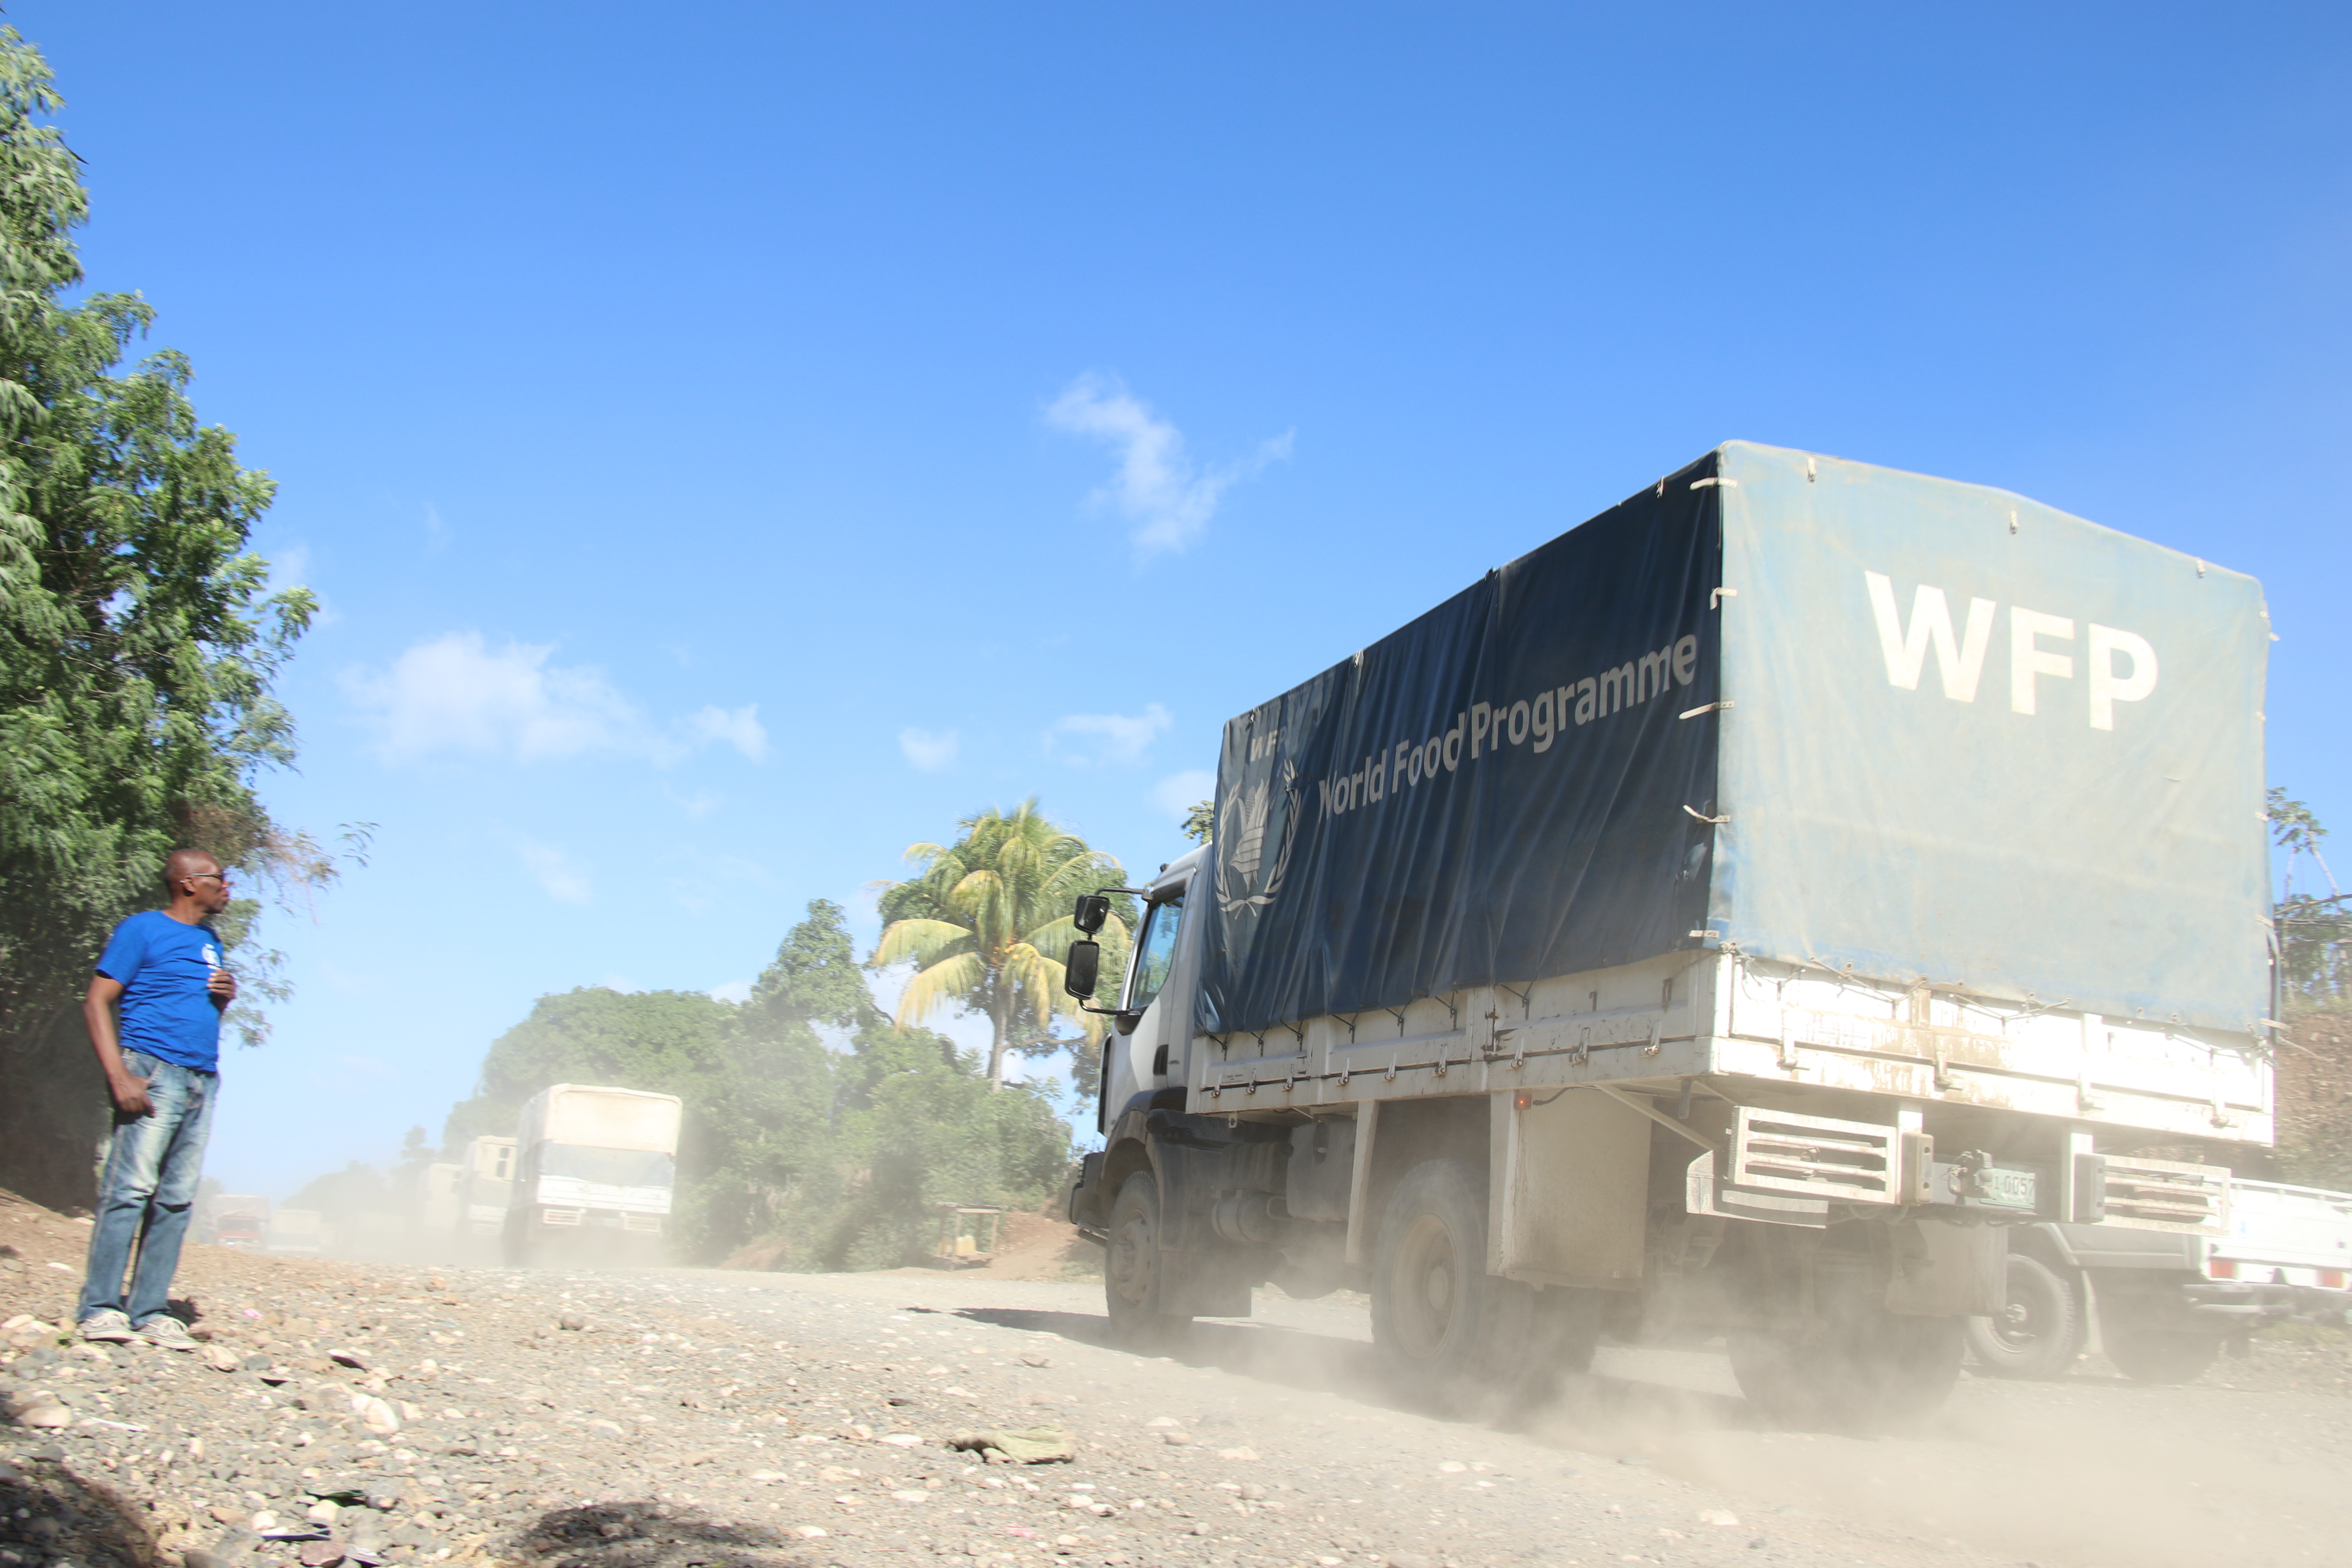 Camion WFP su una strada sterrata